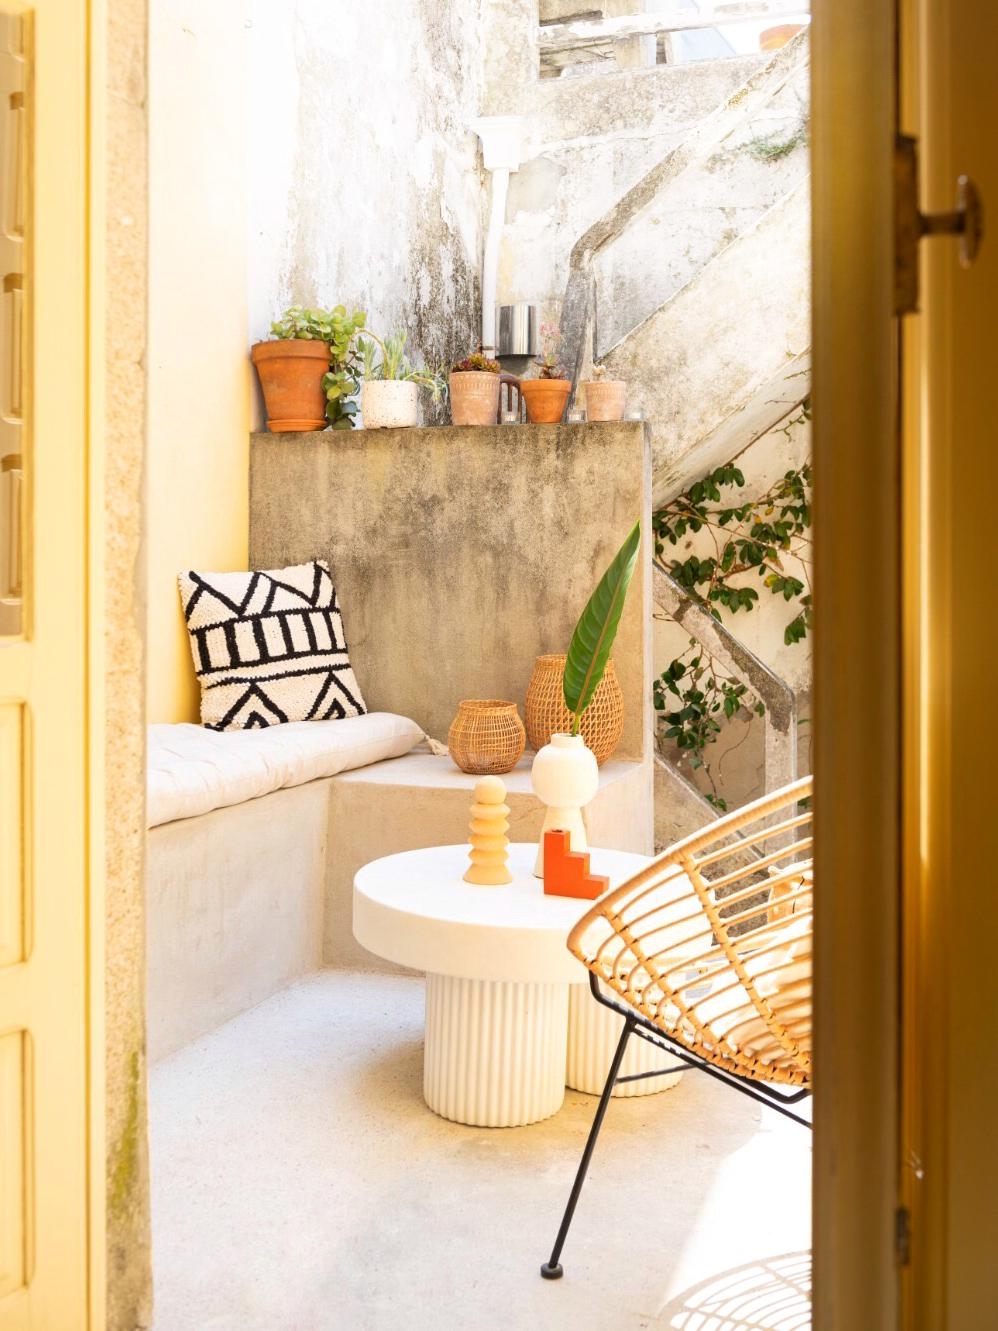 Unsere kleine Sonnenterrasse 🌞
#terrasse #sonnig #mediterran